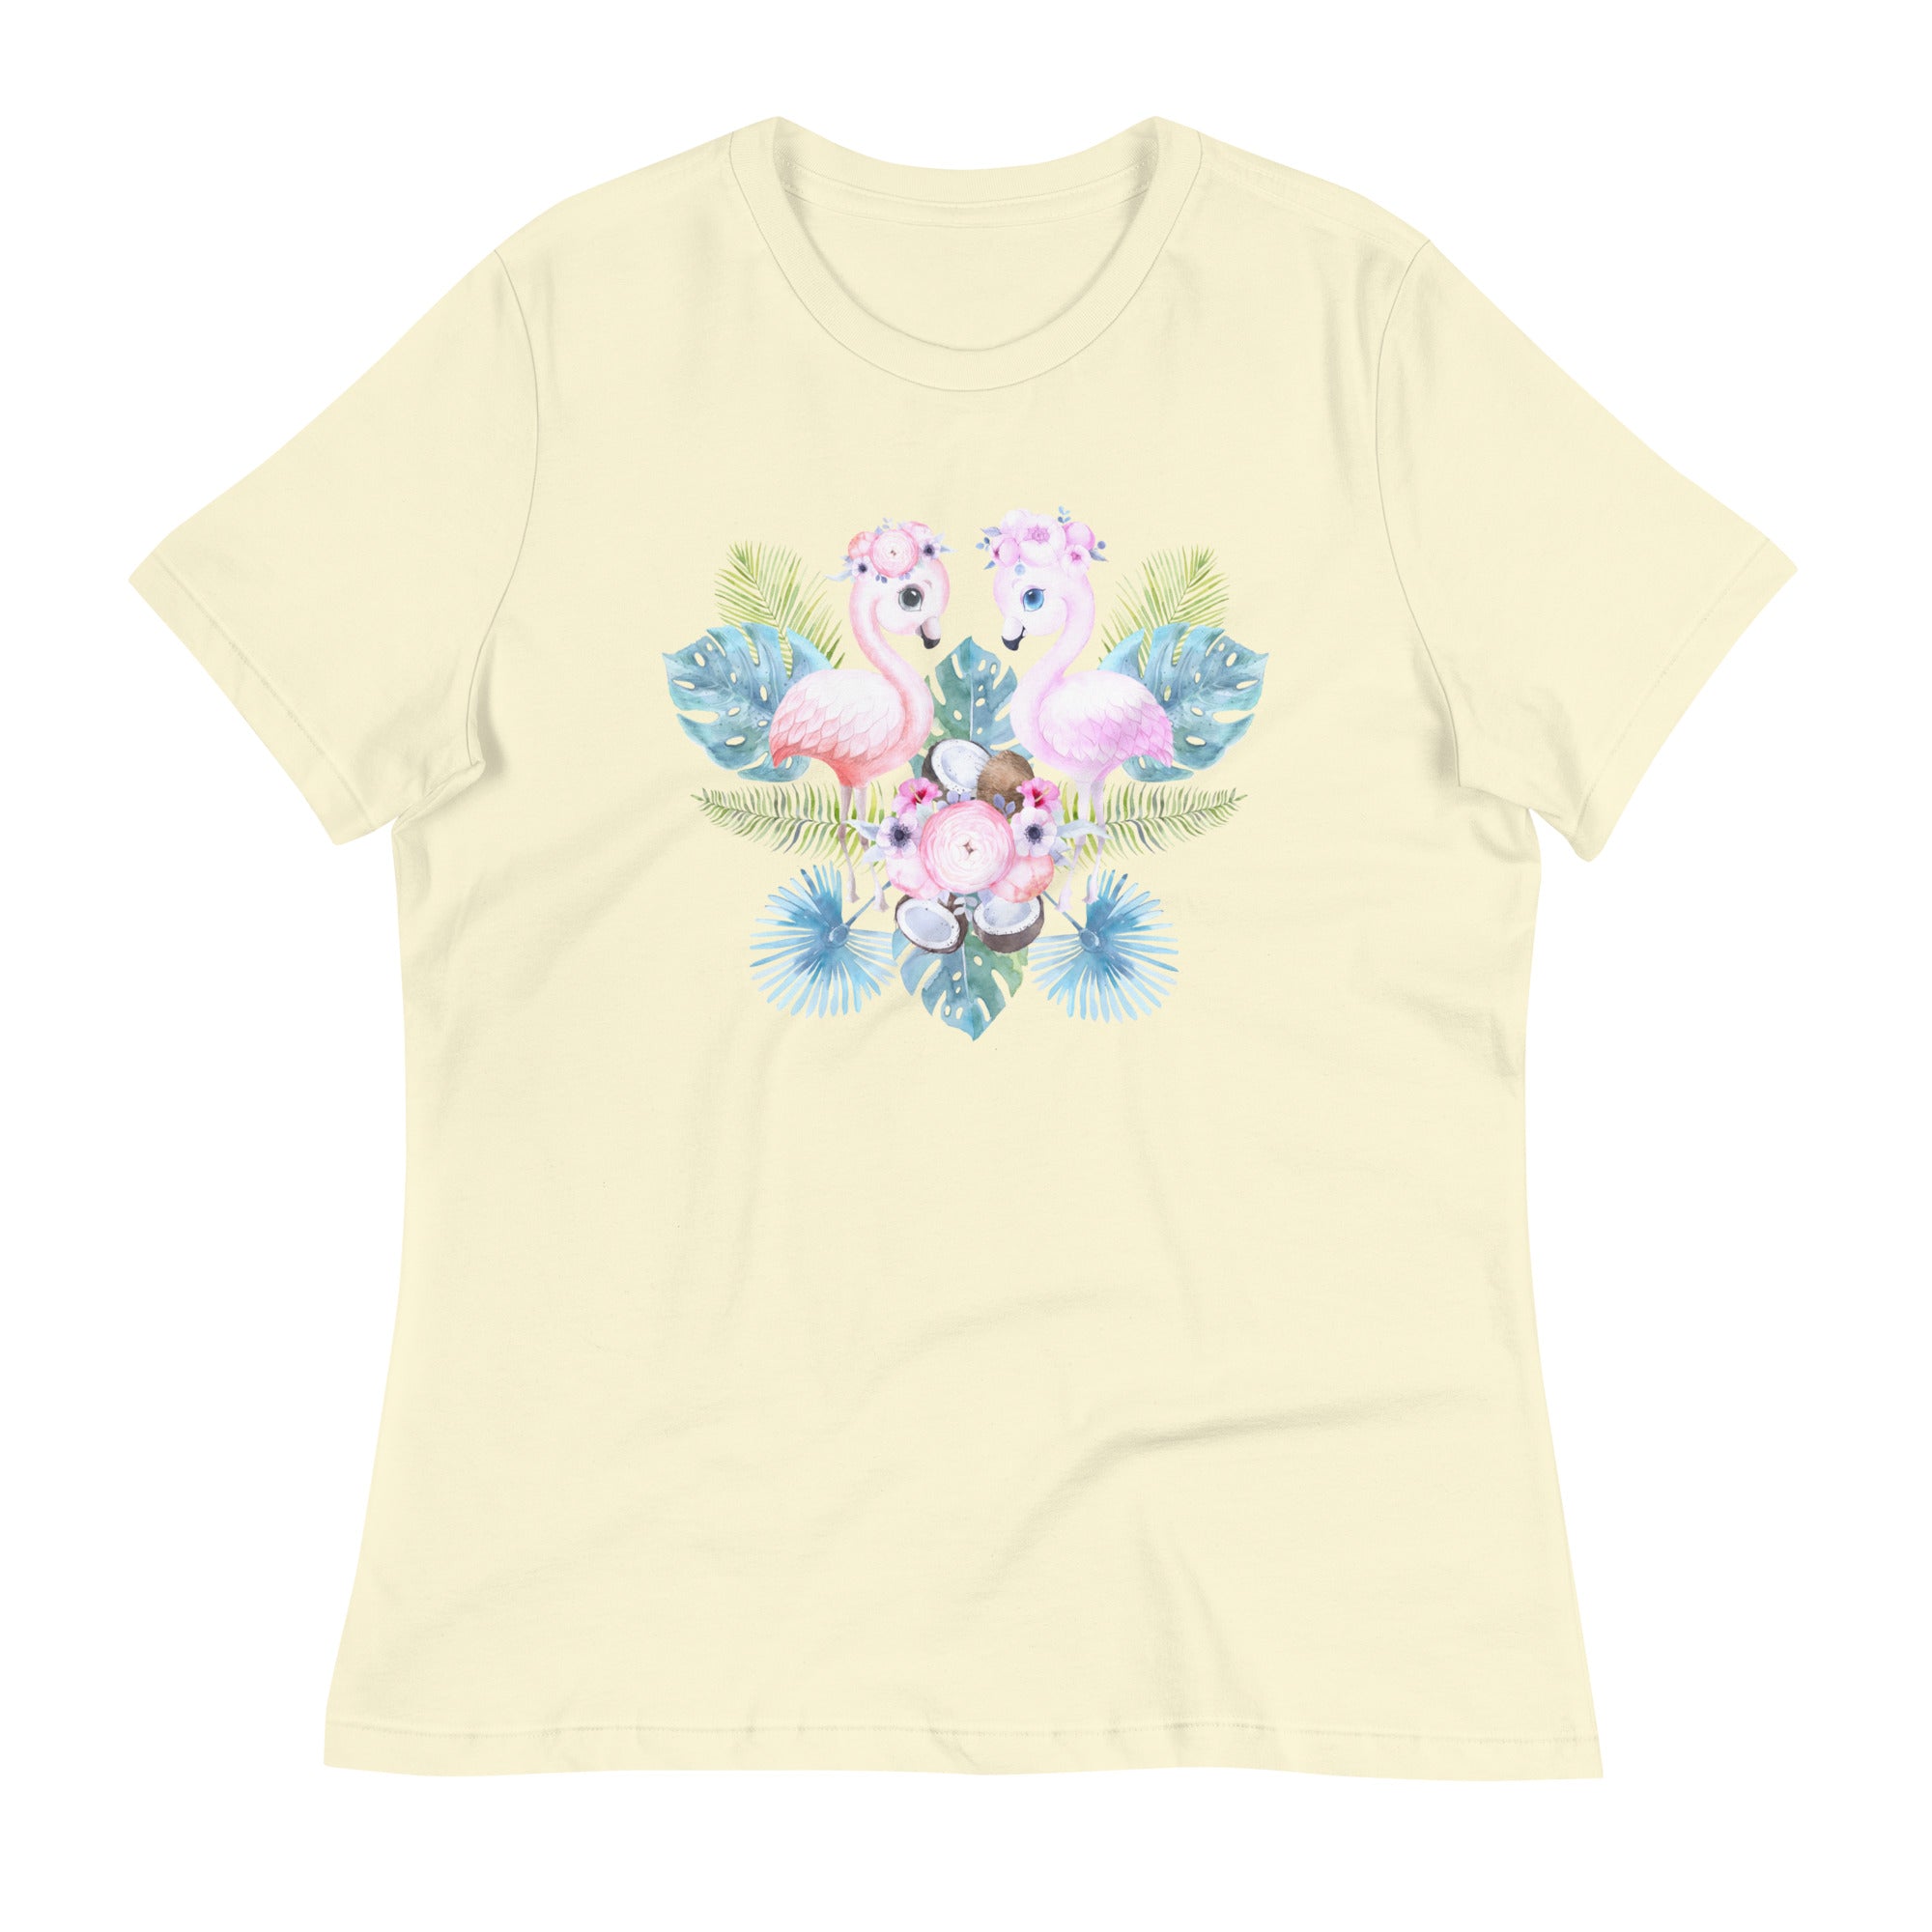 Tropical flamingo t-shirts for women & girls - Lioness-love.com